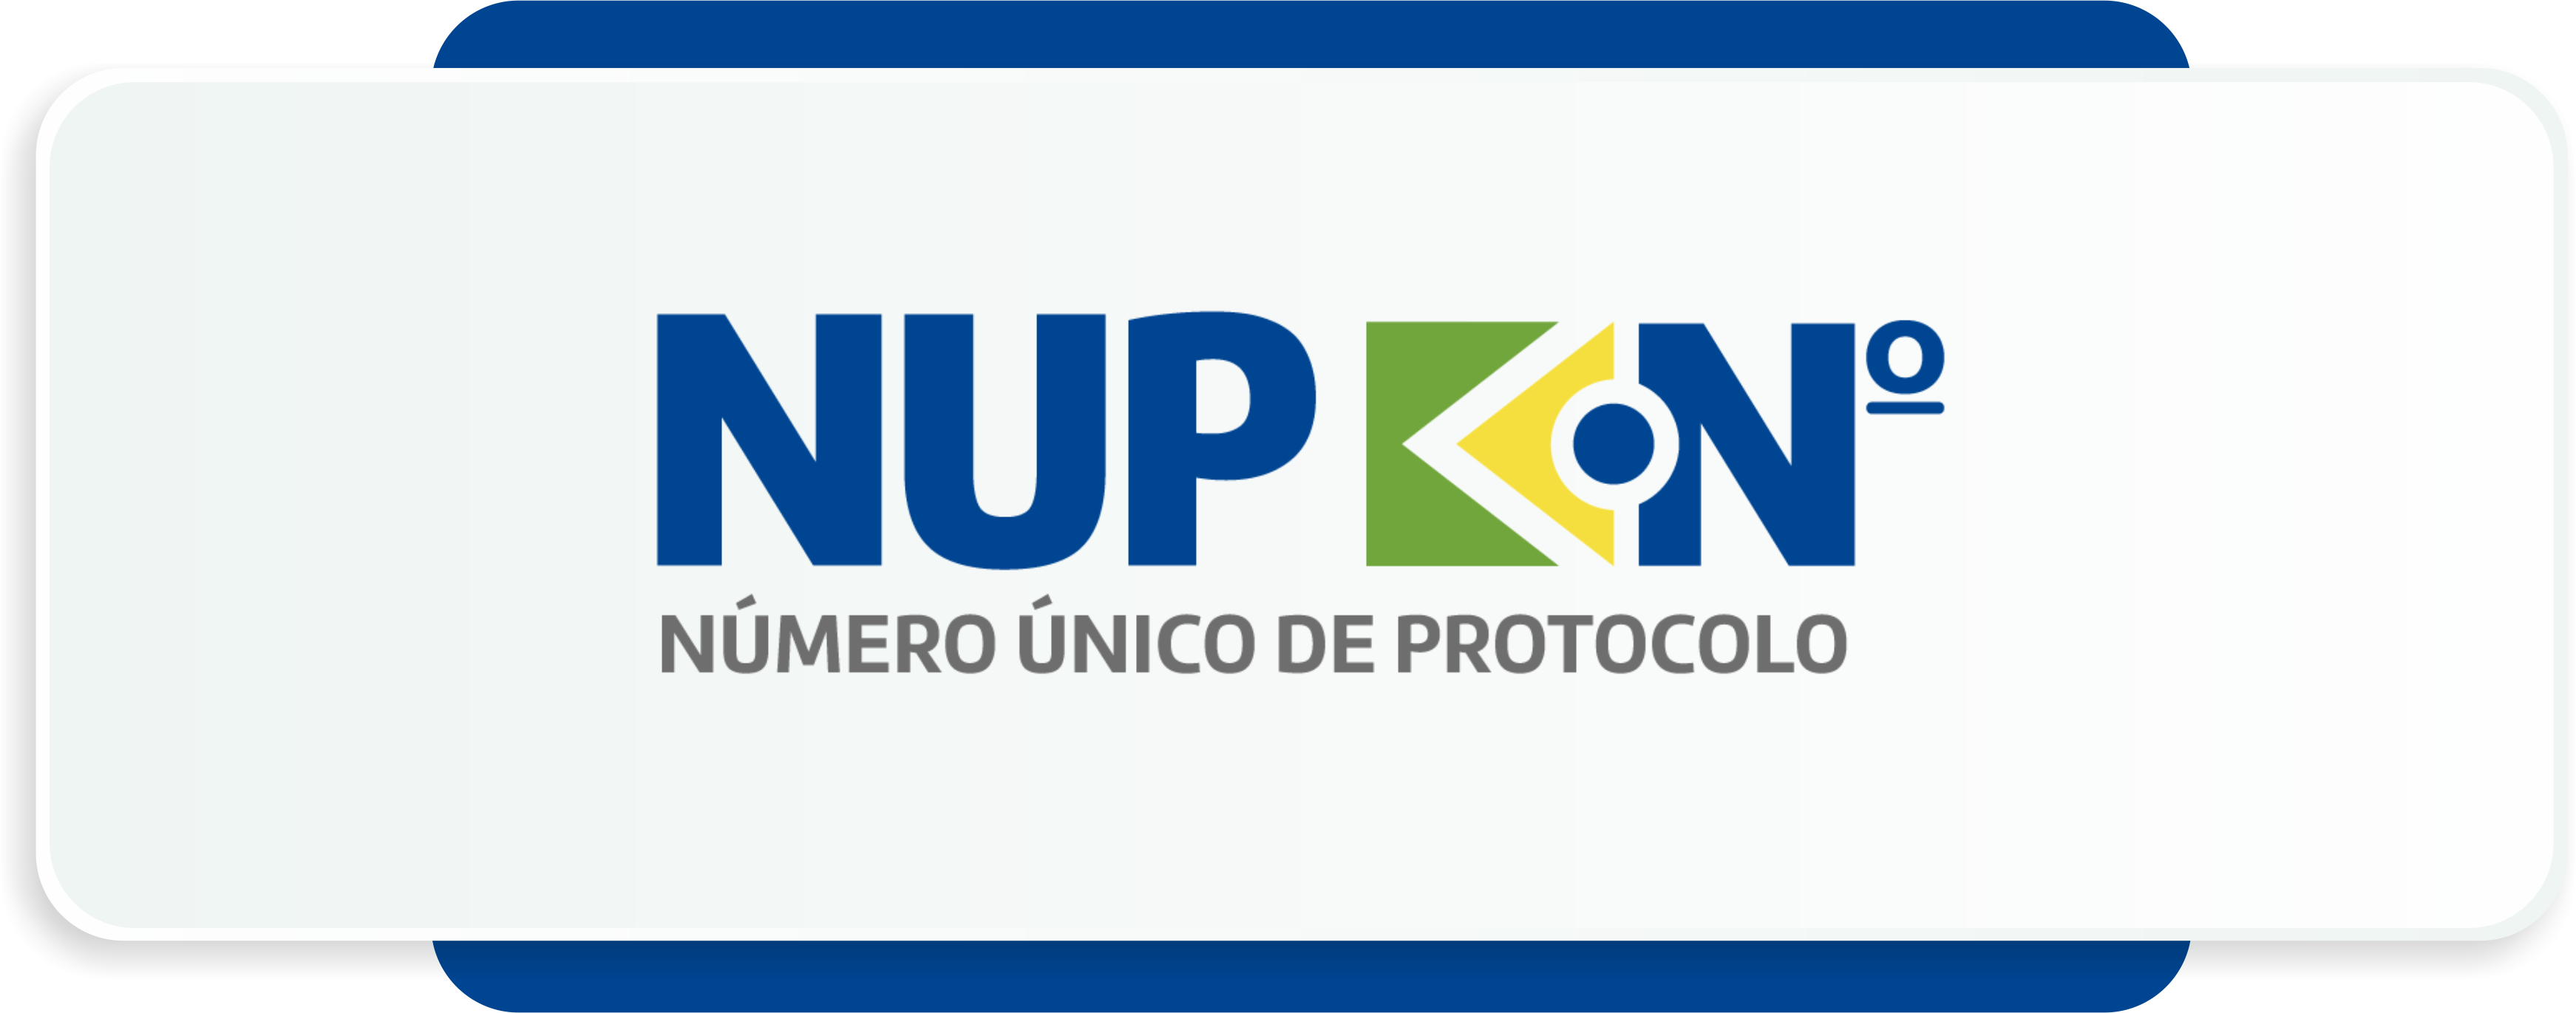 Banner com a logo do NUP e link para a página com mais informações